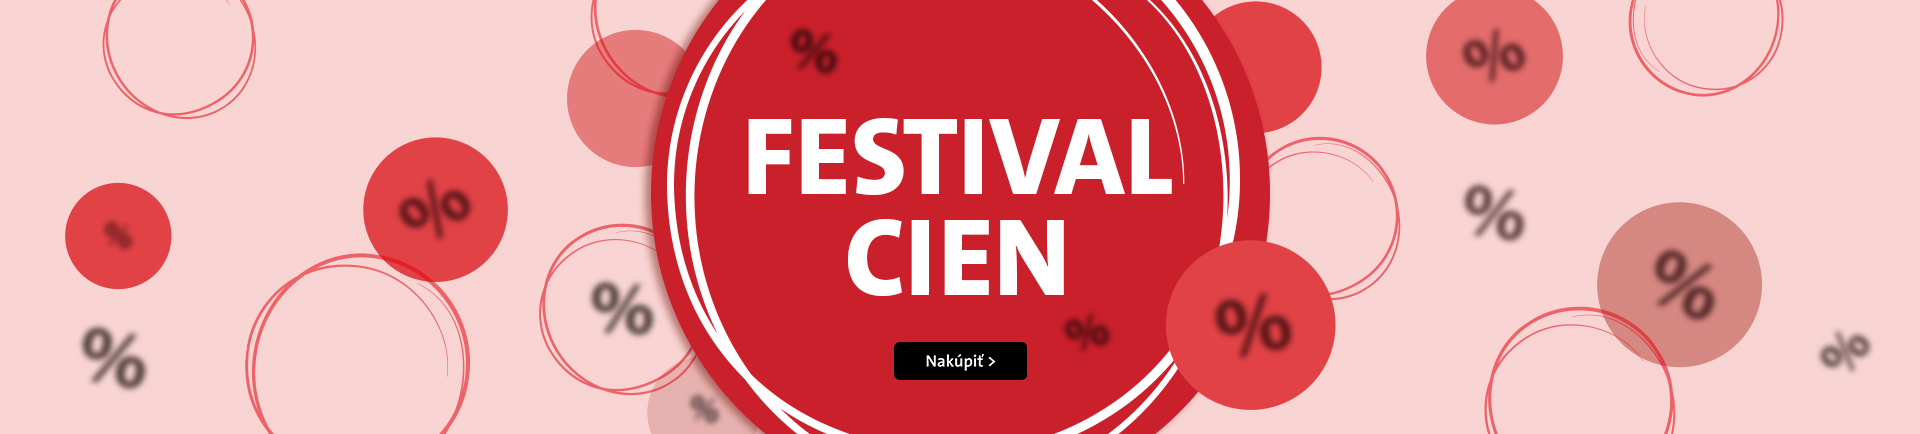 10/23 Festival cen